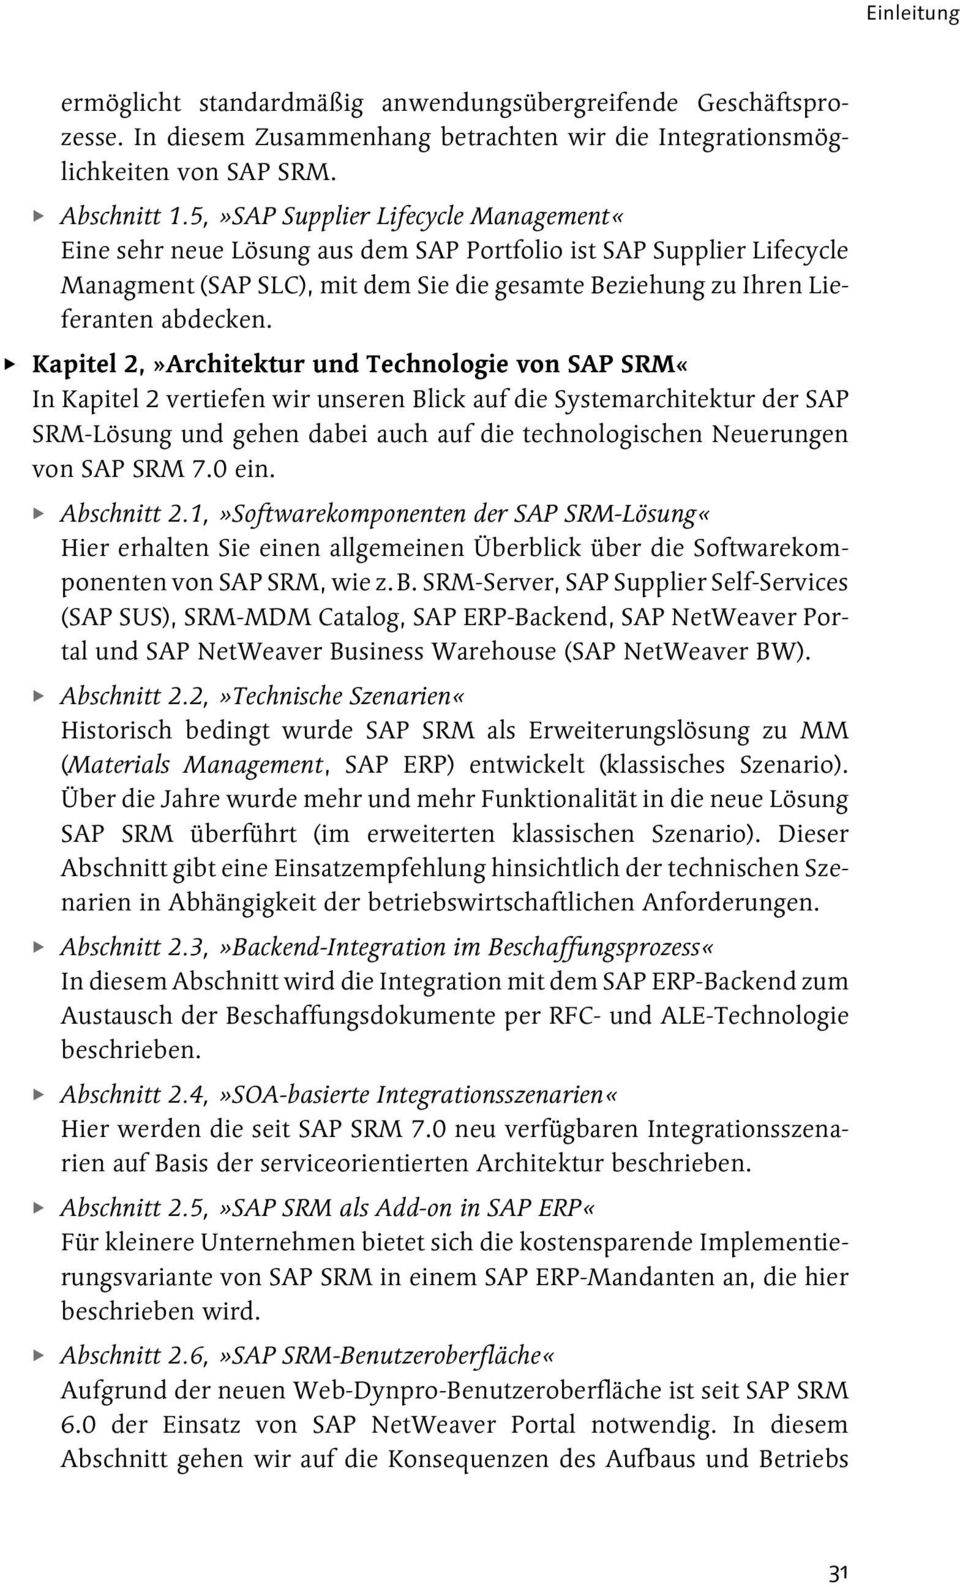 Kapitel 2,»Architektur und Technologie von SAP SRM«In Kapitel 2 vertiefen wir unseren Blick auf die Systemarchitektur der SAP SRM-Lösung und gehen dabei auch auf die technologischen Neuerungen von